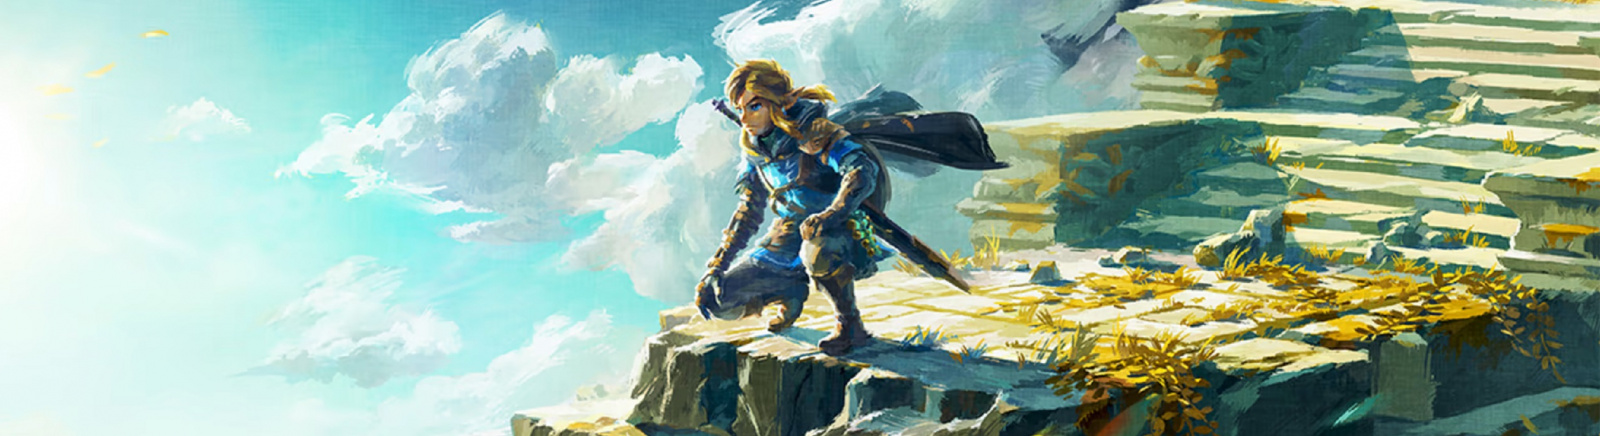 Дата выхода The Legend of Zelda: Tears of the Kingdom  на Nintendo Switch в России и во всем мире